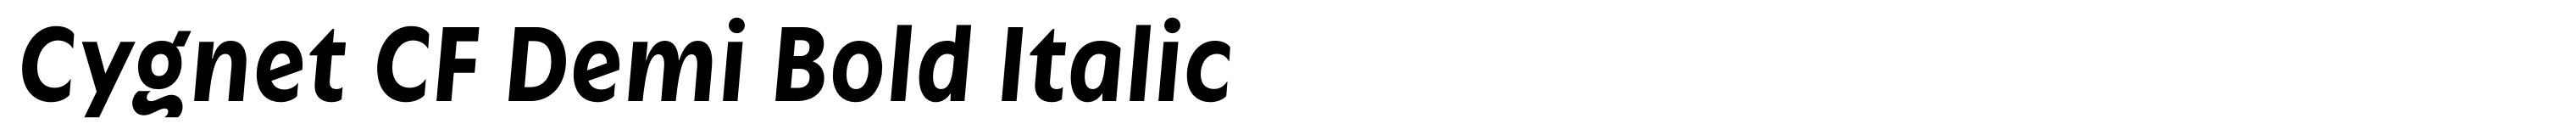 Cygnet CF Demi Bold Italic